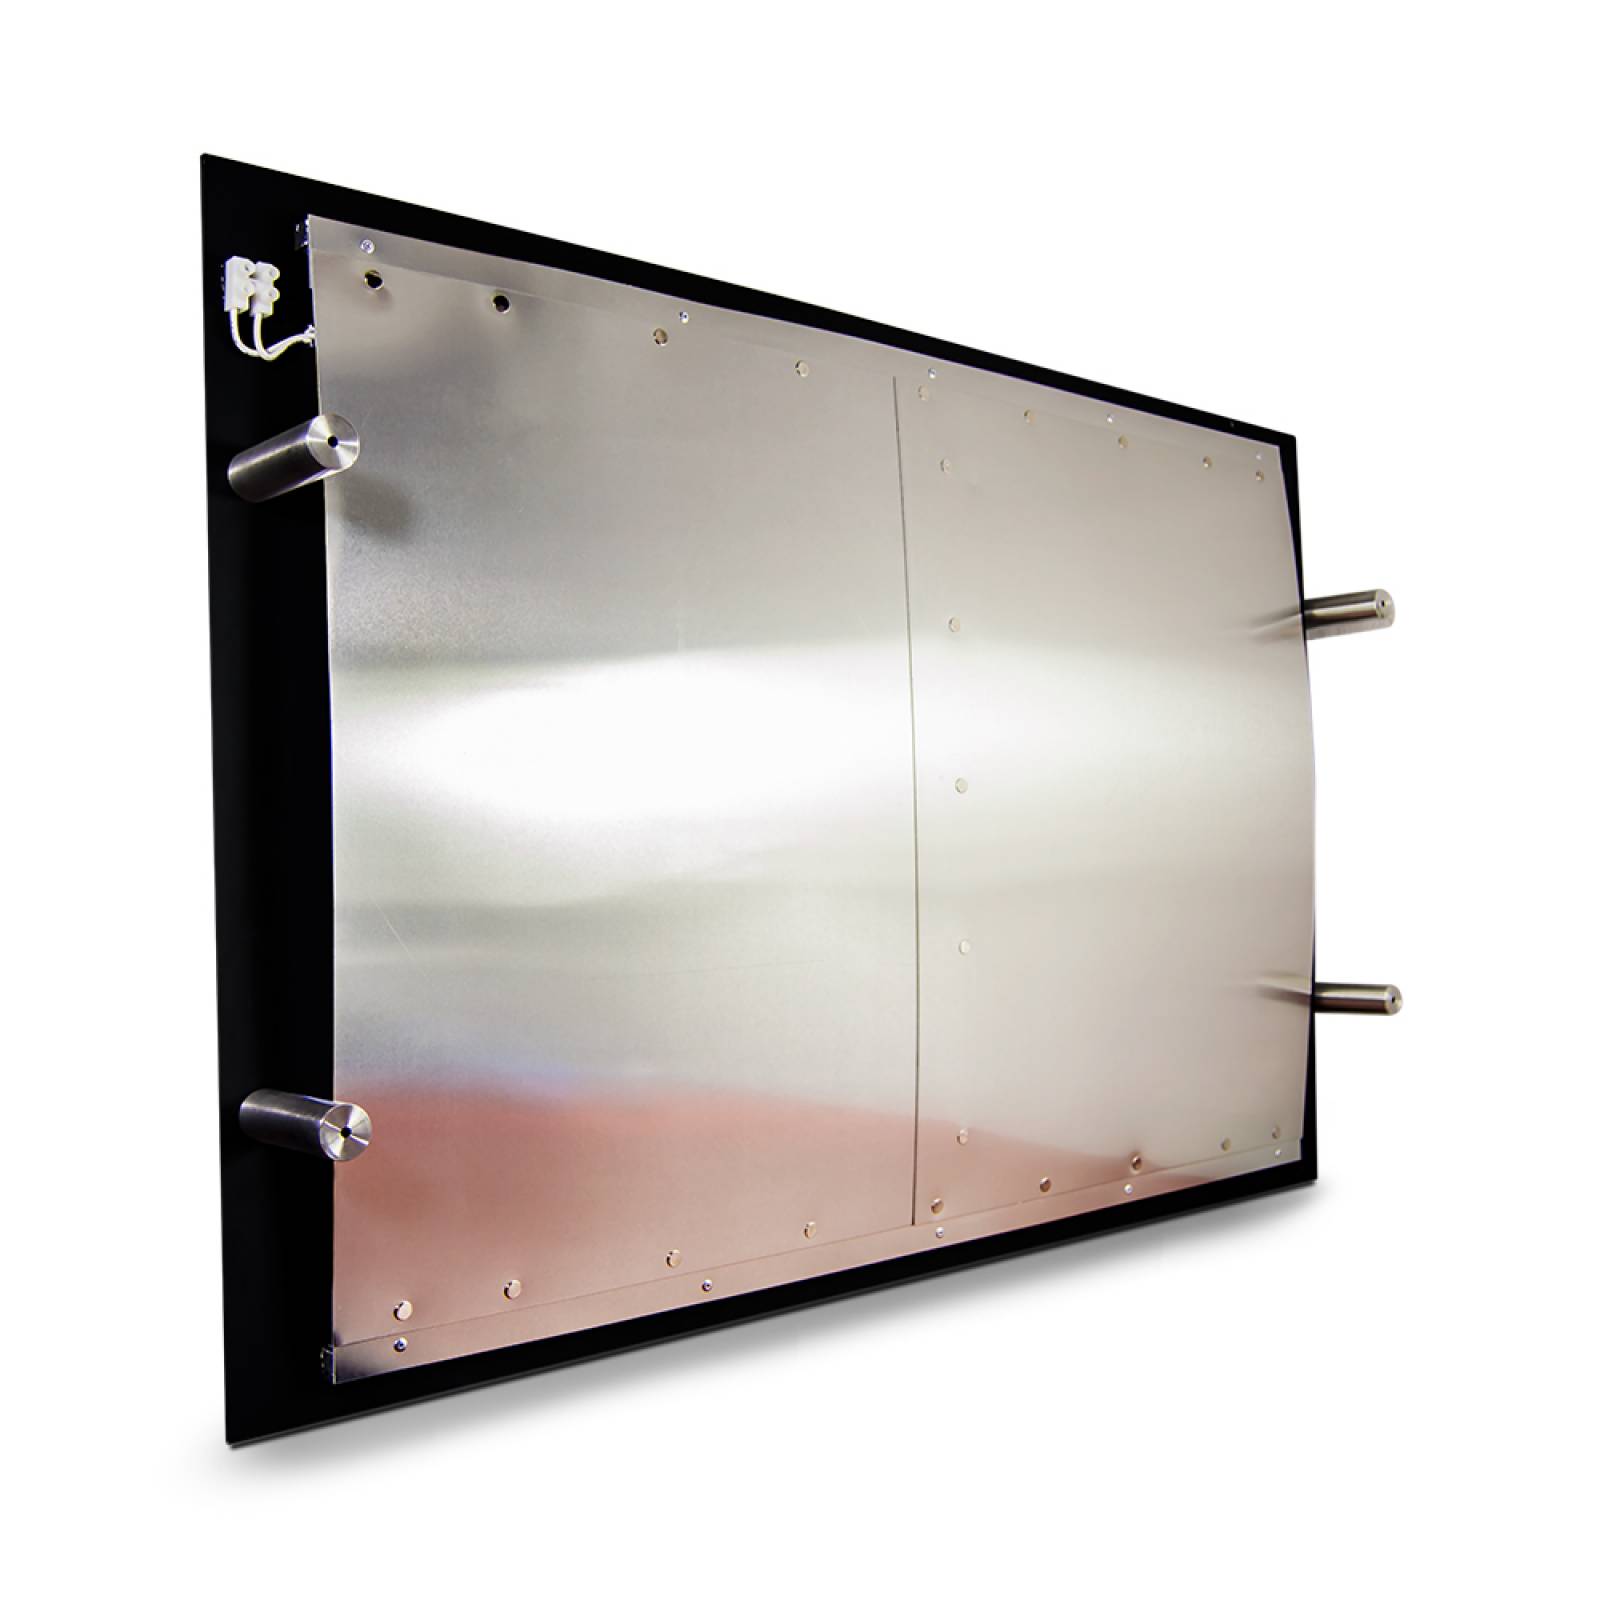 Calefactor de Panel infrarrojo en Cristal para Techo, Arizona Wave Black Star de 550W 60x90cm, Mod: 343CaSol-TN3